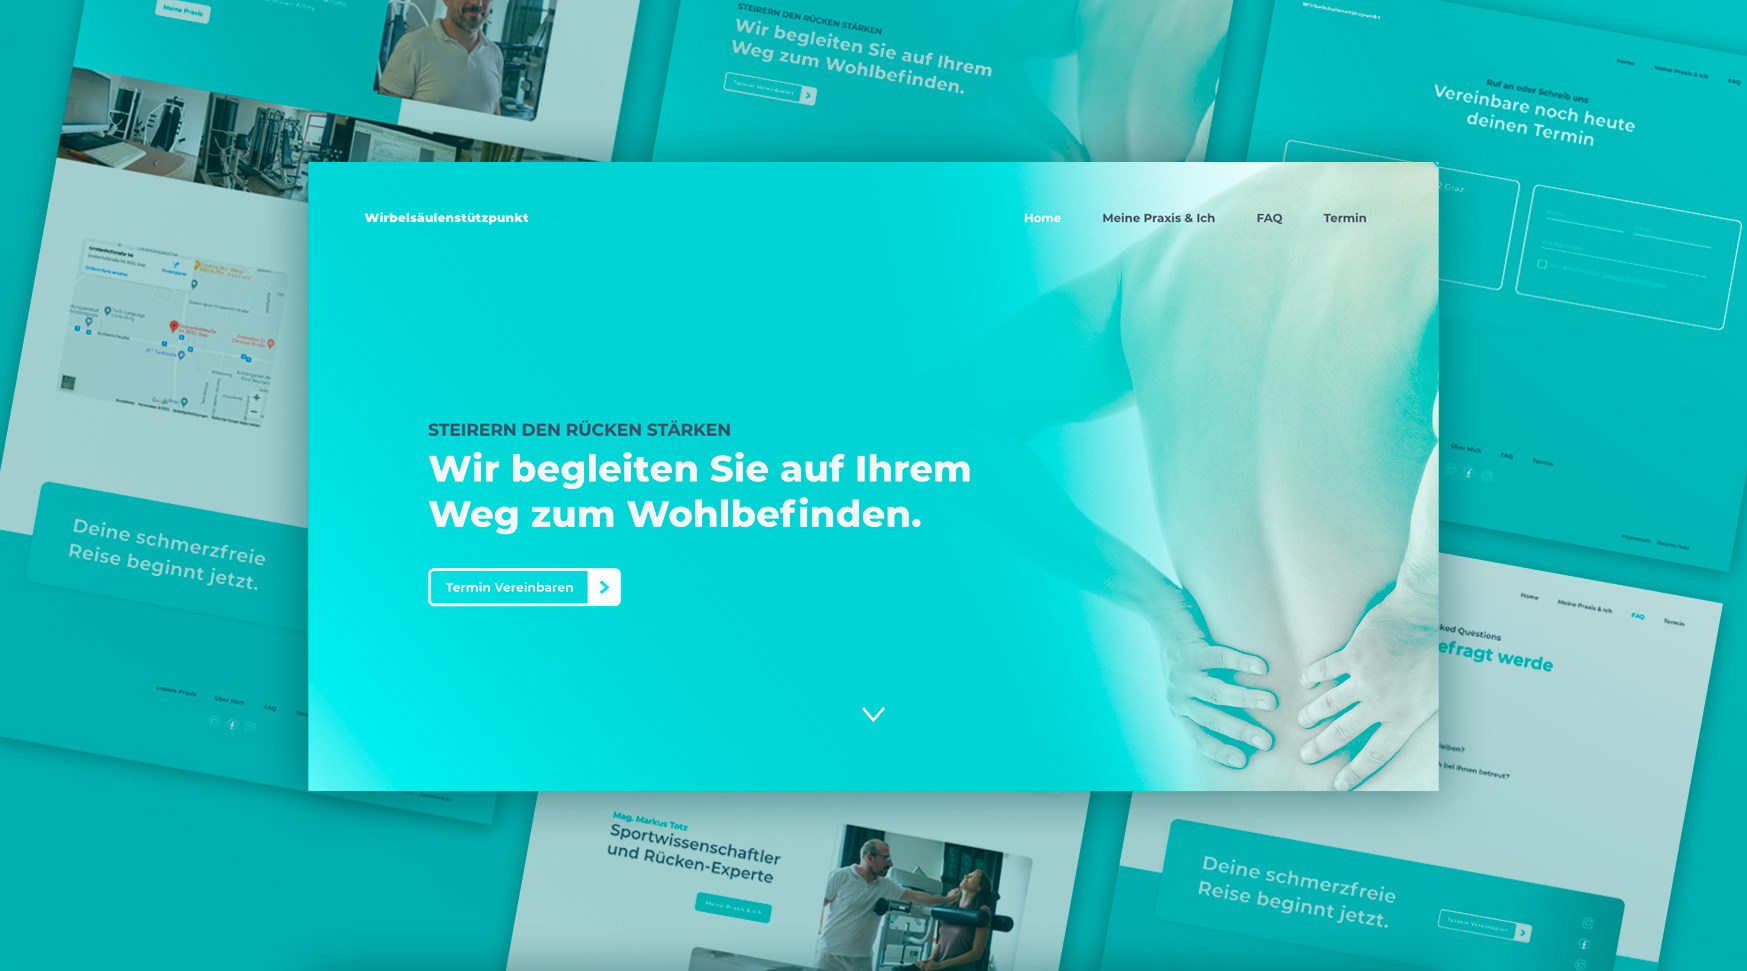 Ein Website-Design für die Chiropraktik-Klinik "Wirbelsäulensstützpunkt Graz"